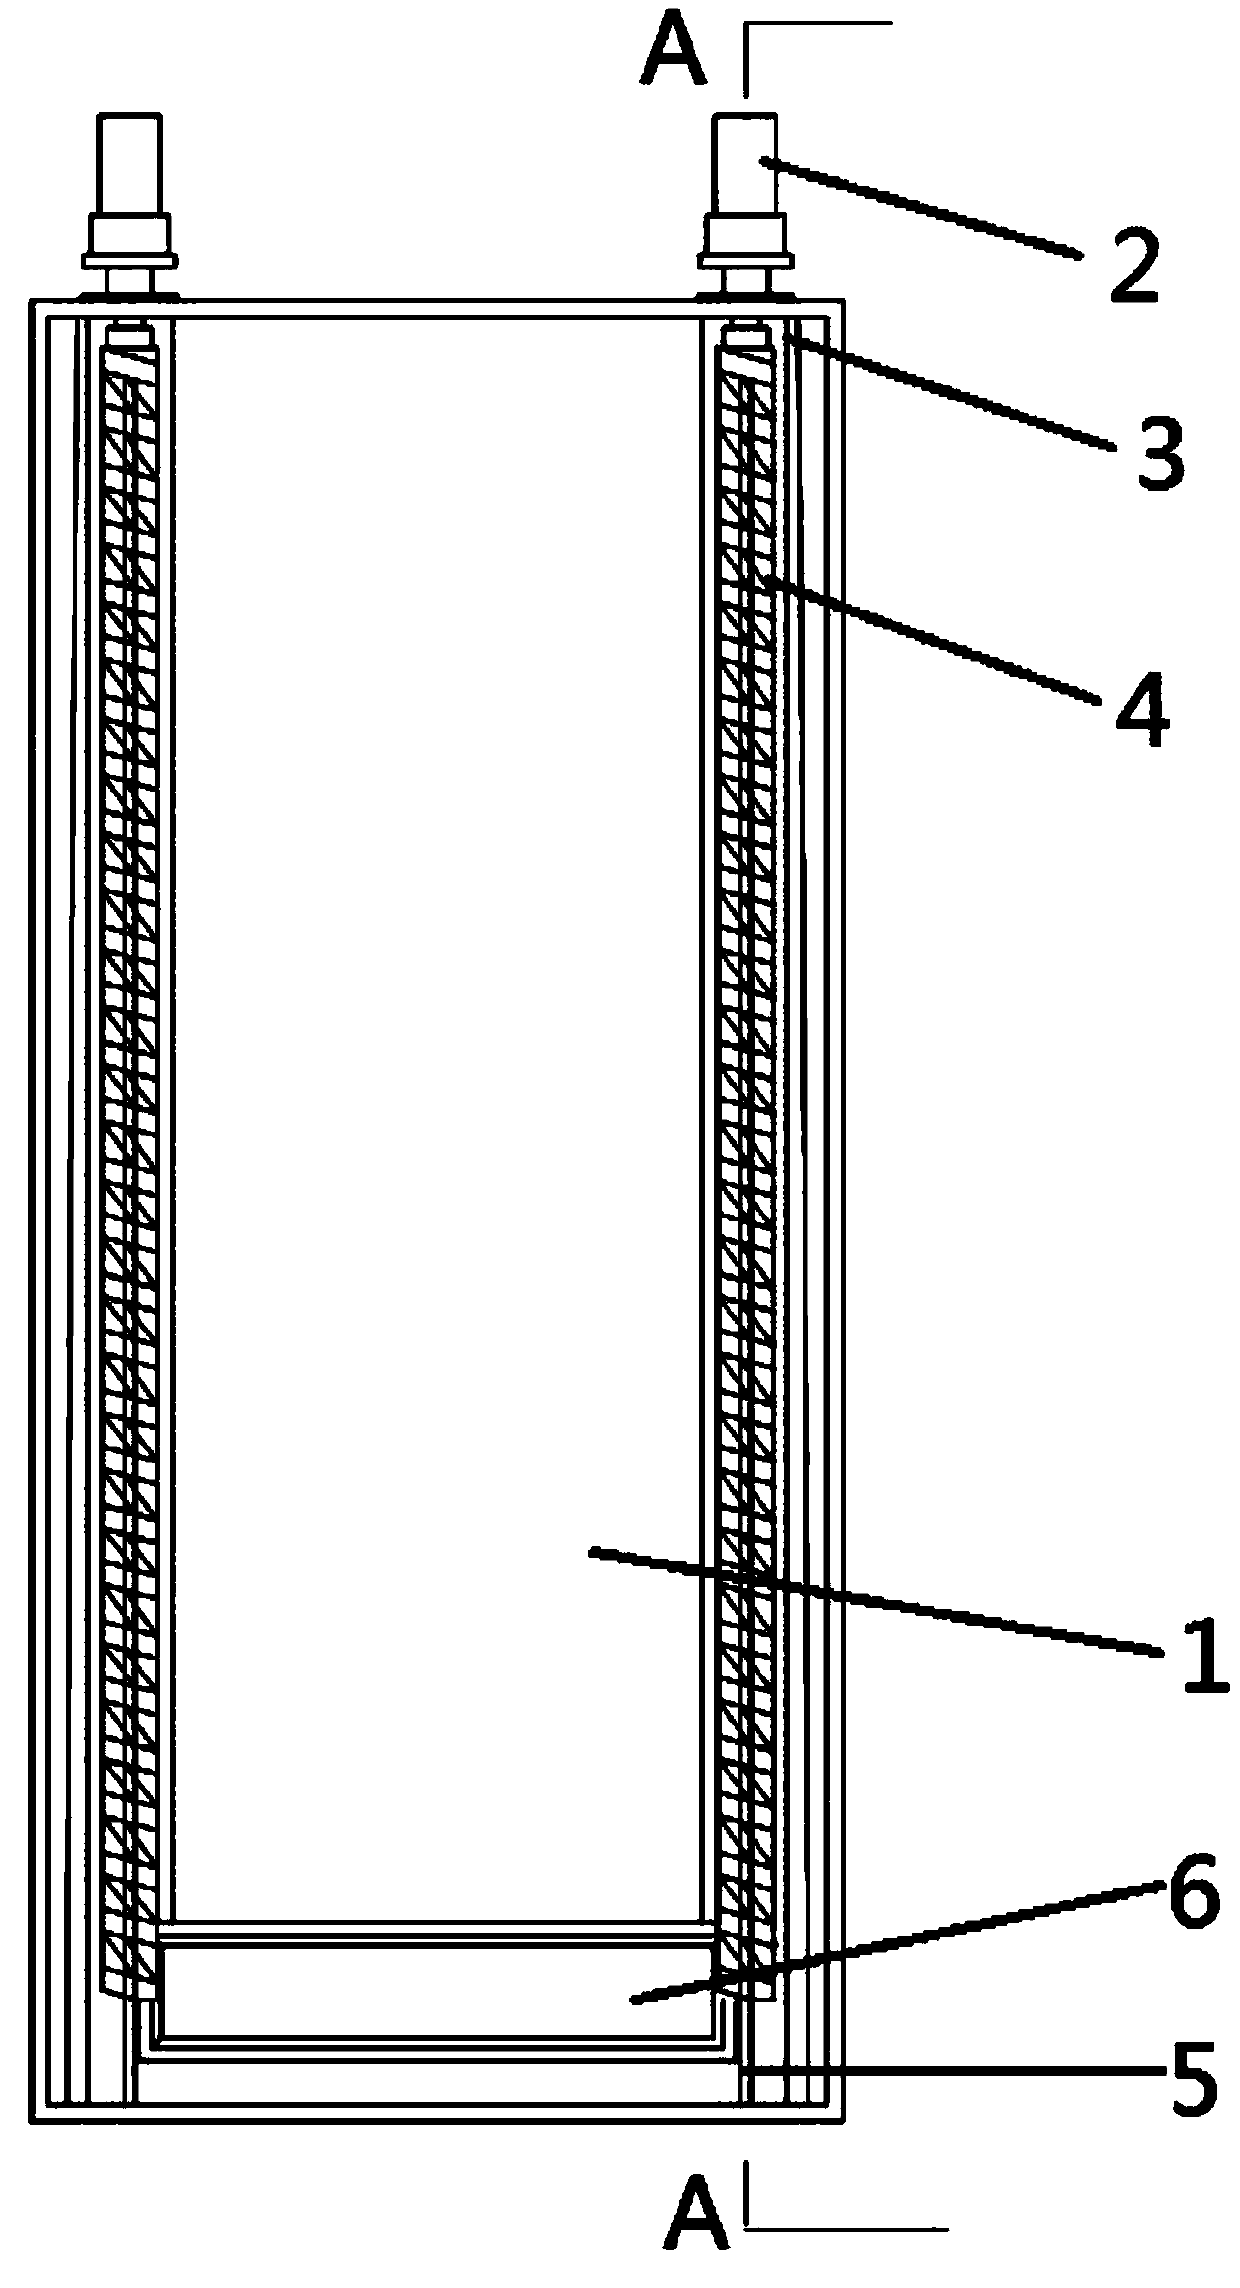 Gantry fragment discharging mechanism